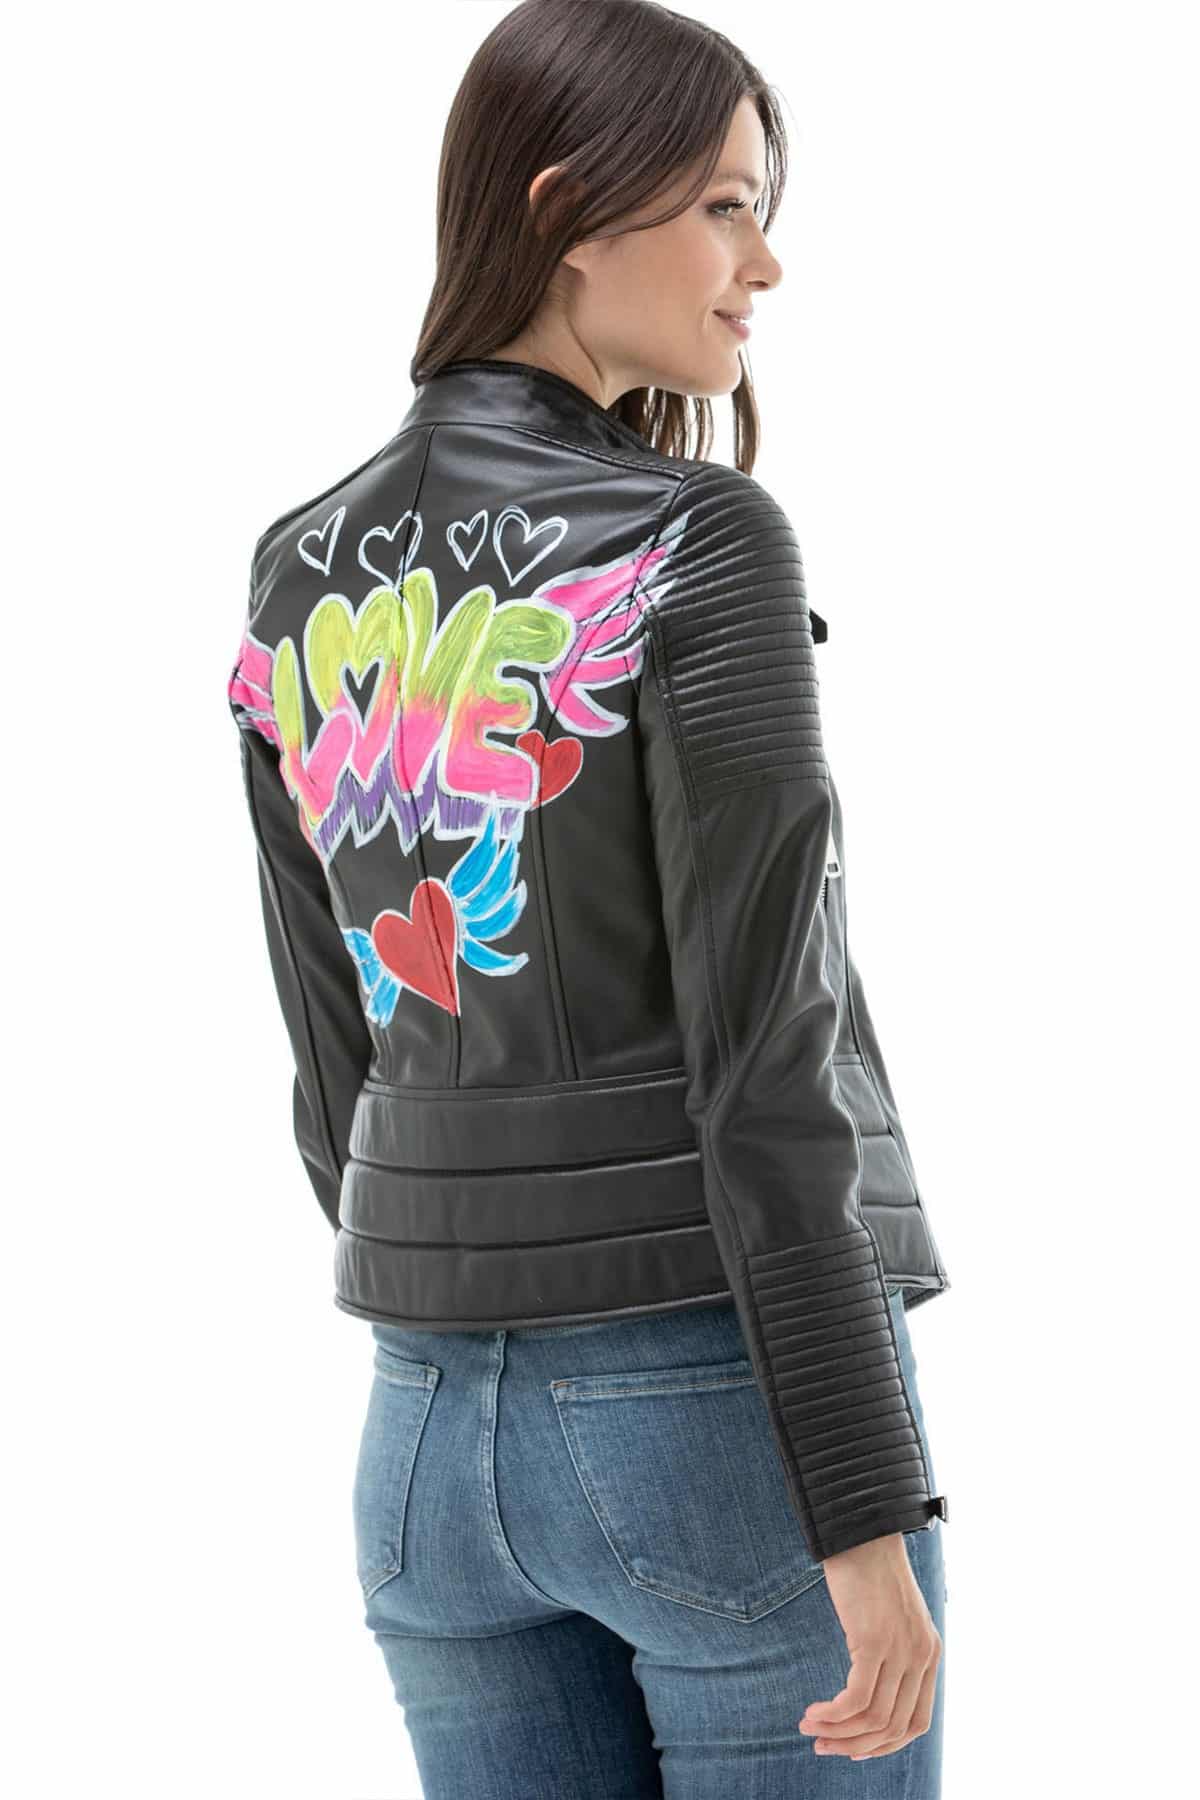 civilisation adelig vegetarisk Looking for Womens Black Leather Biker Jacket With Back Print?